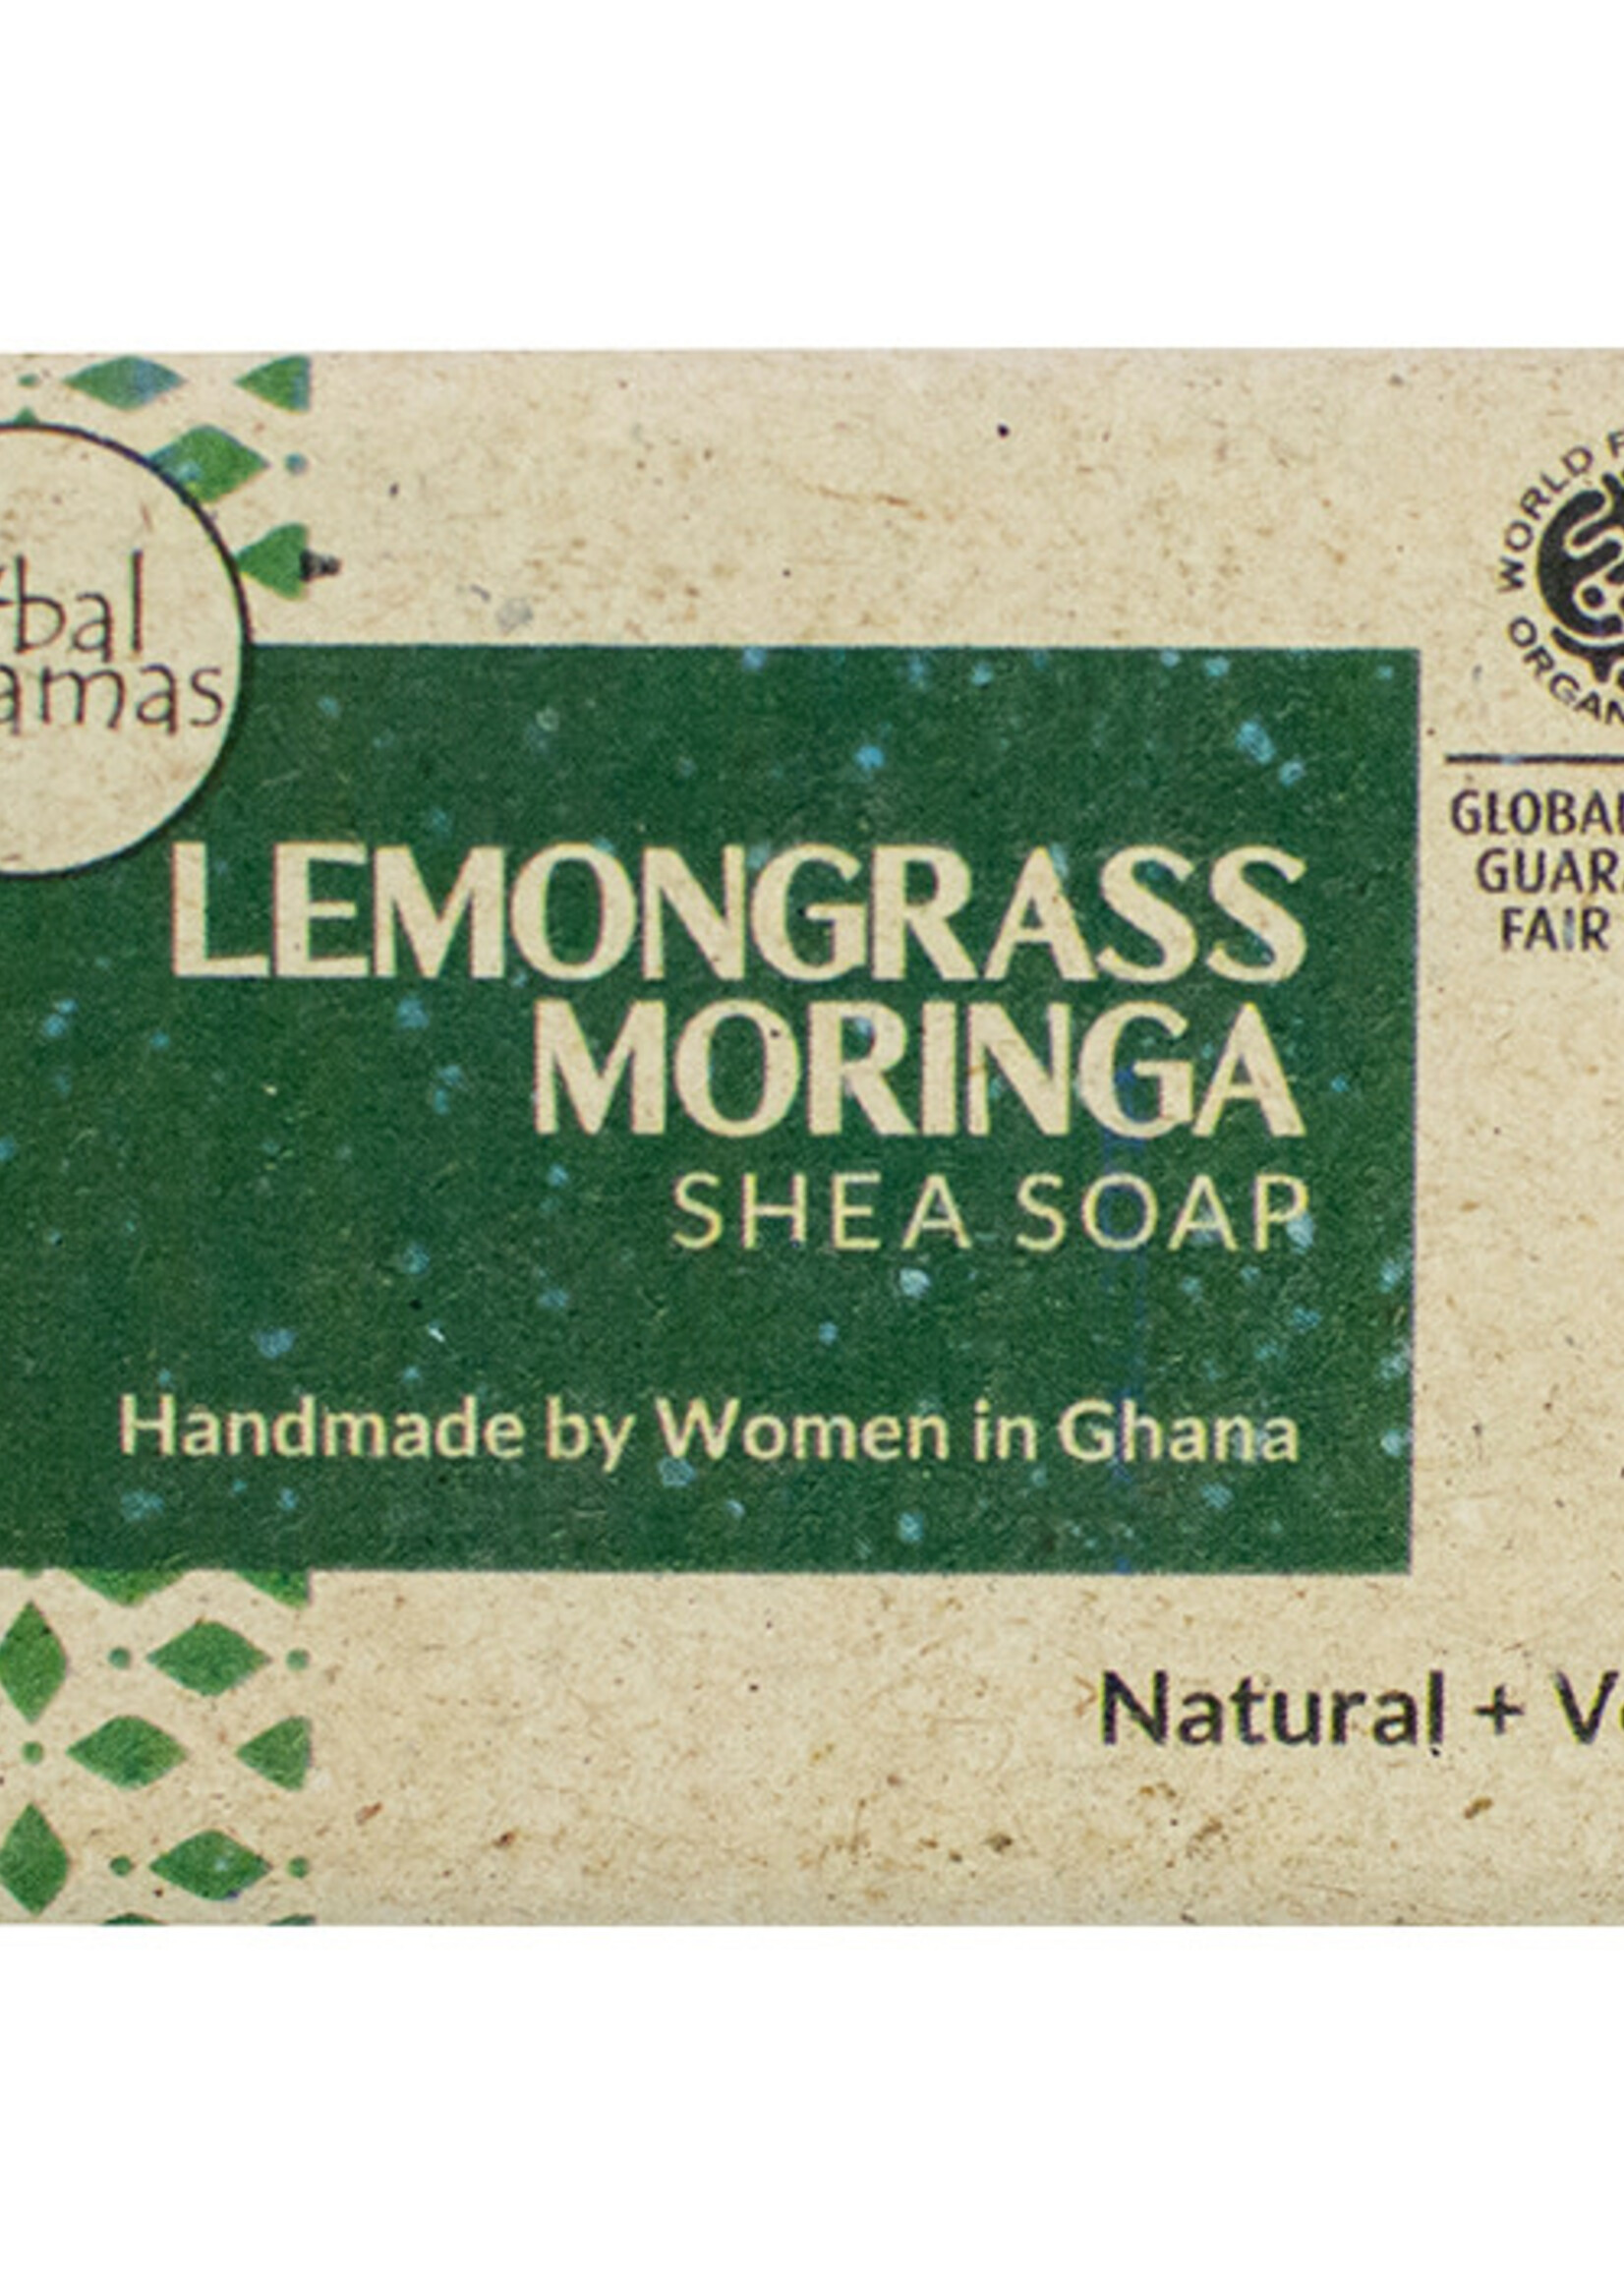 Global Mamas TS Lemongrass Moringa Shea Soap